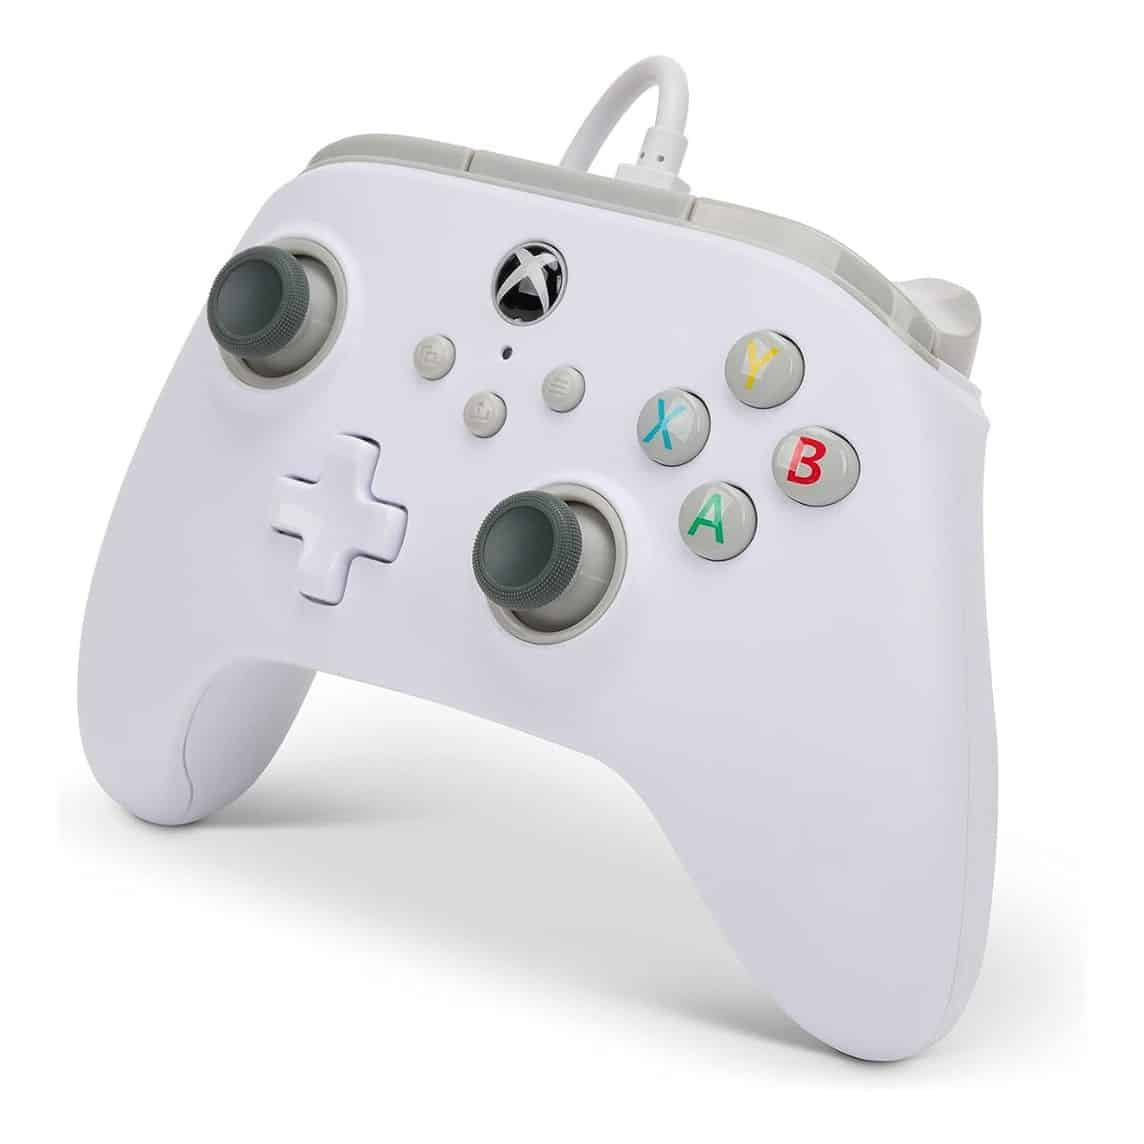 Découvrez le premier combo officiel clavier/souris pour la Xbox One